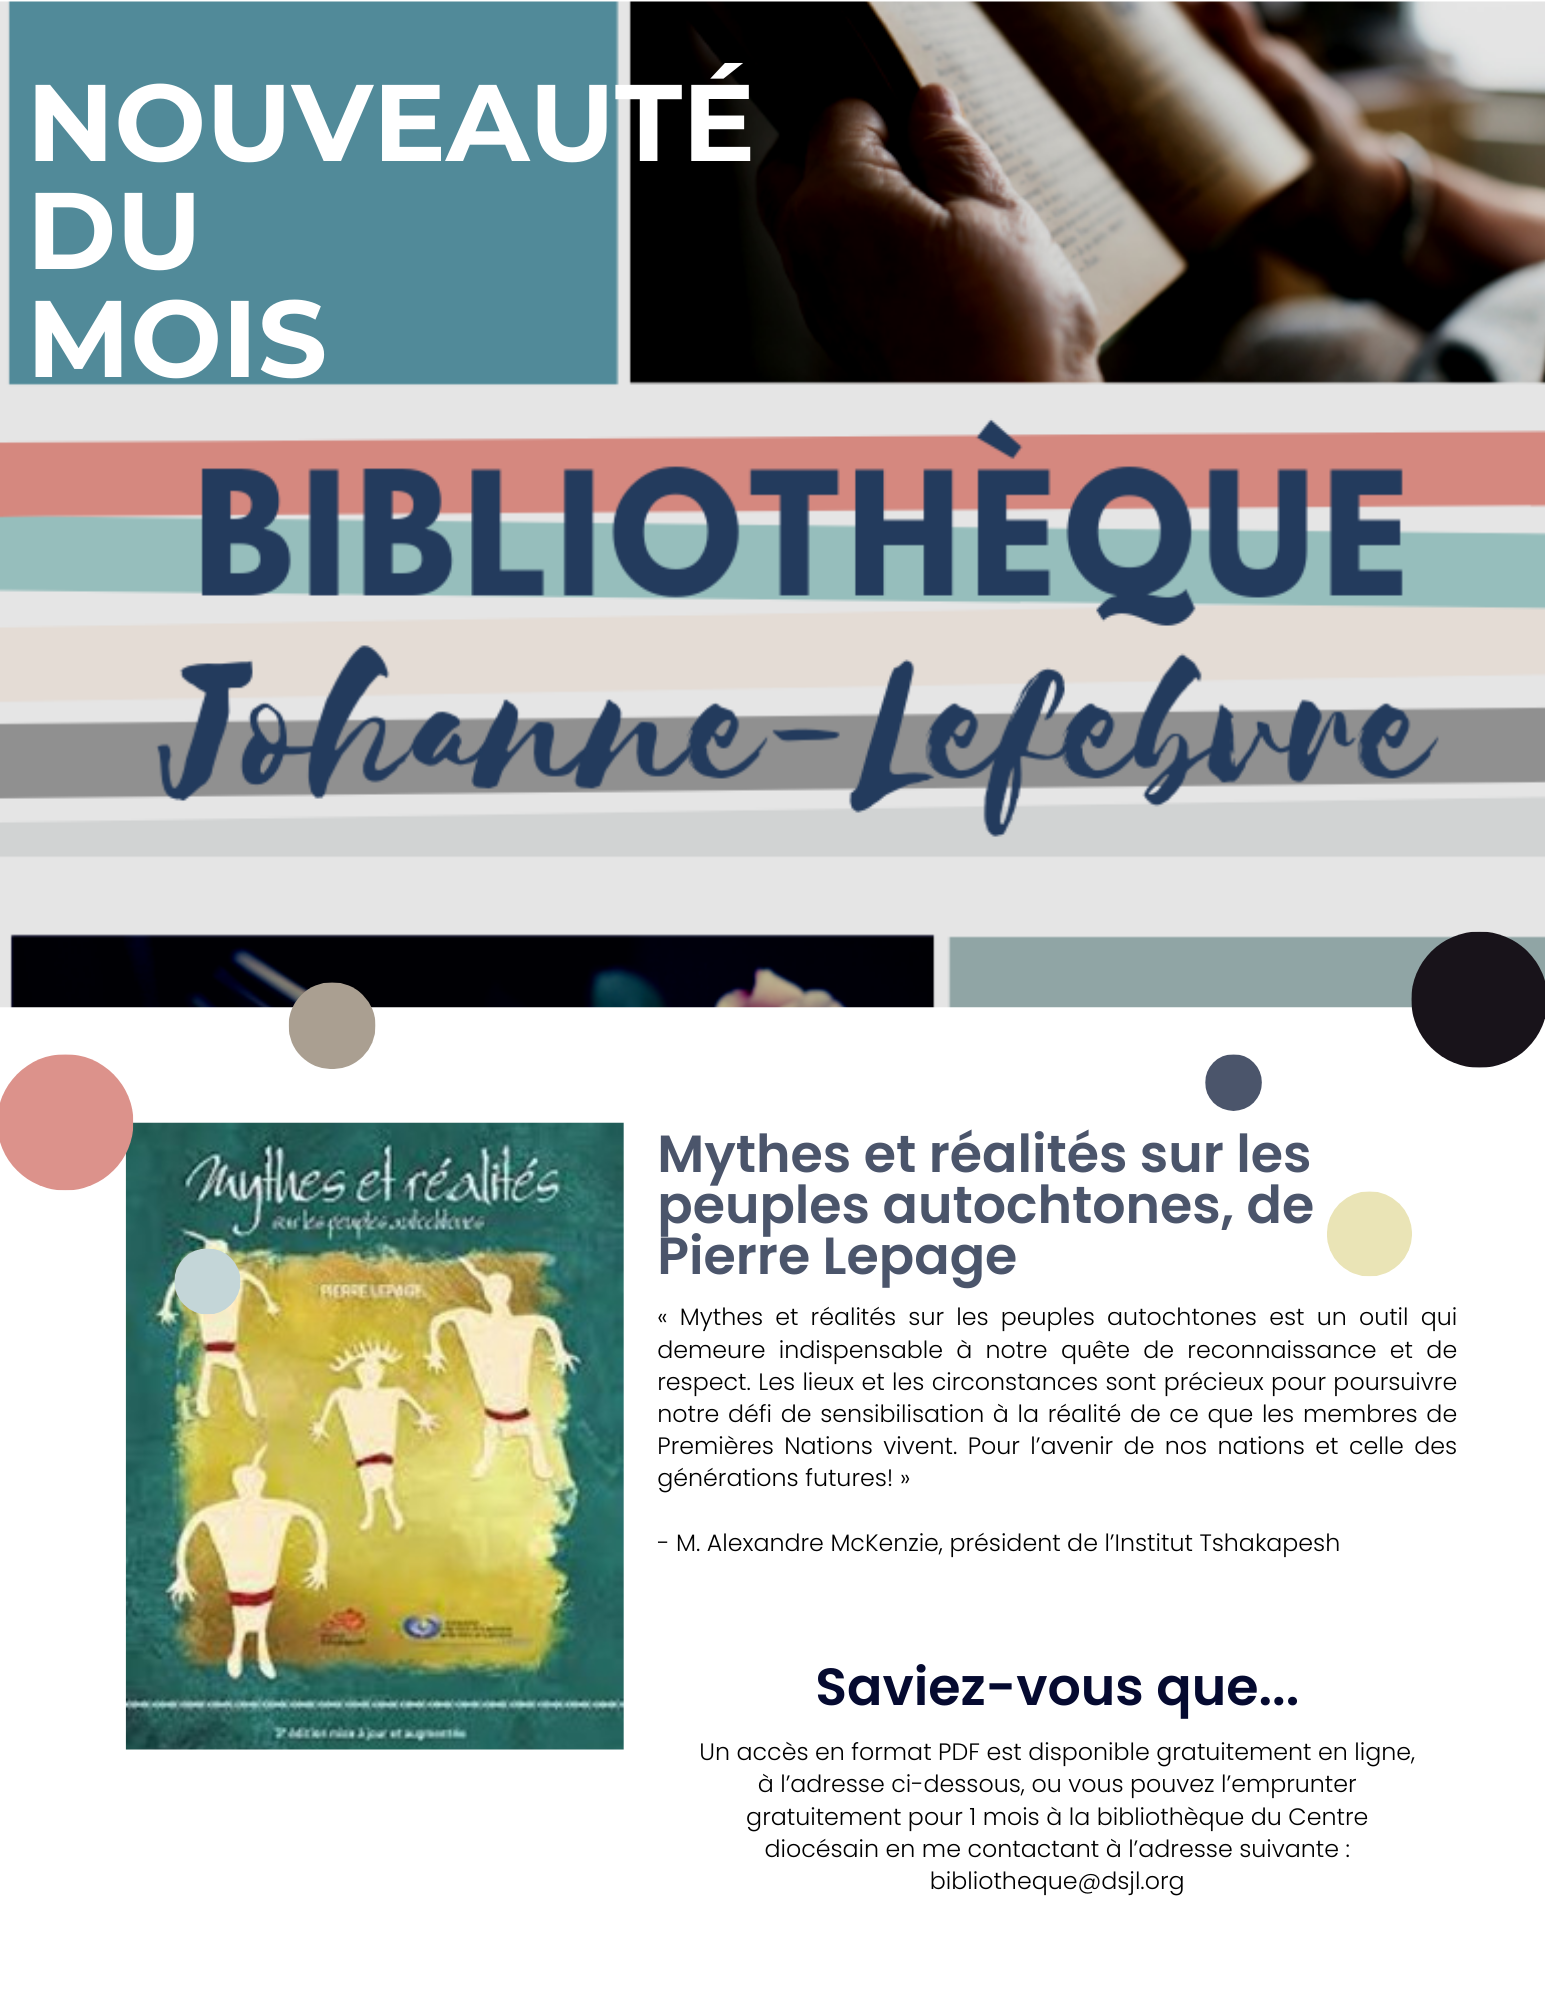 Nouveaute_du_mois_-_bibliotheque__1_.png